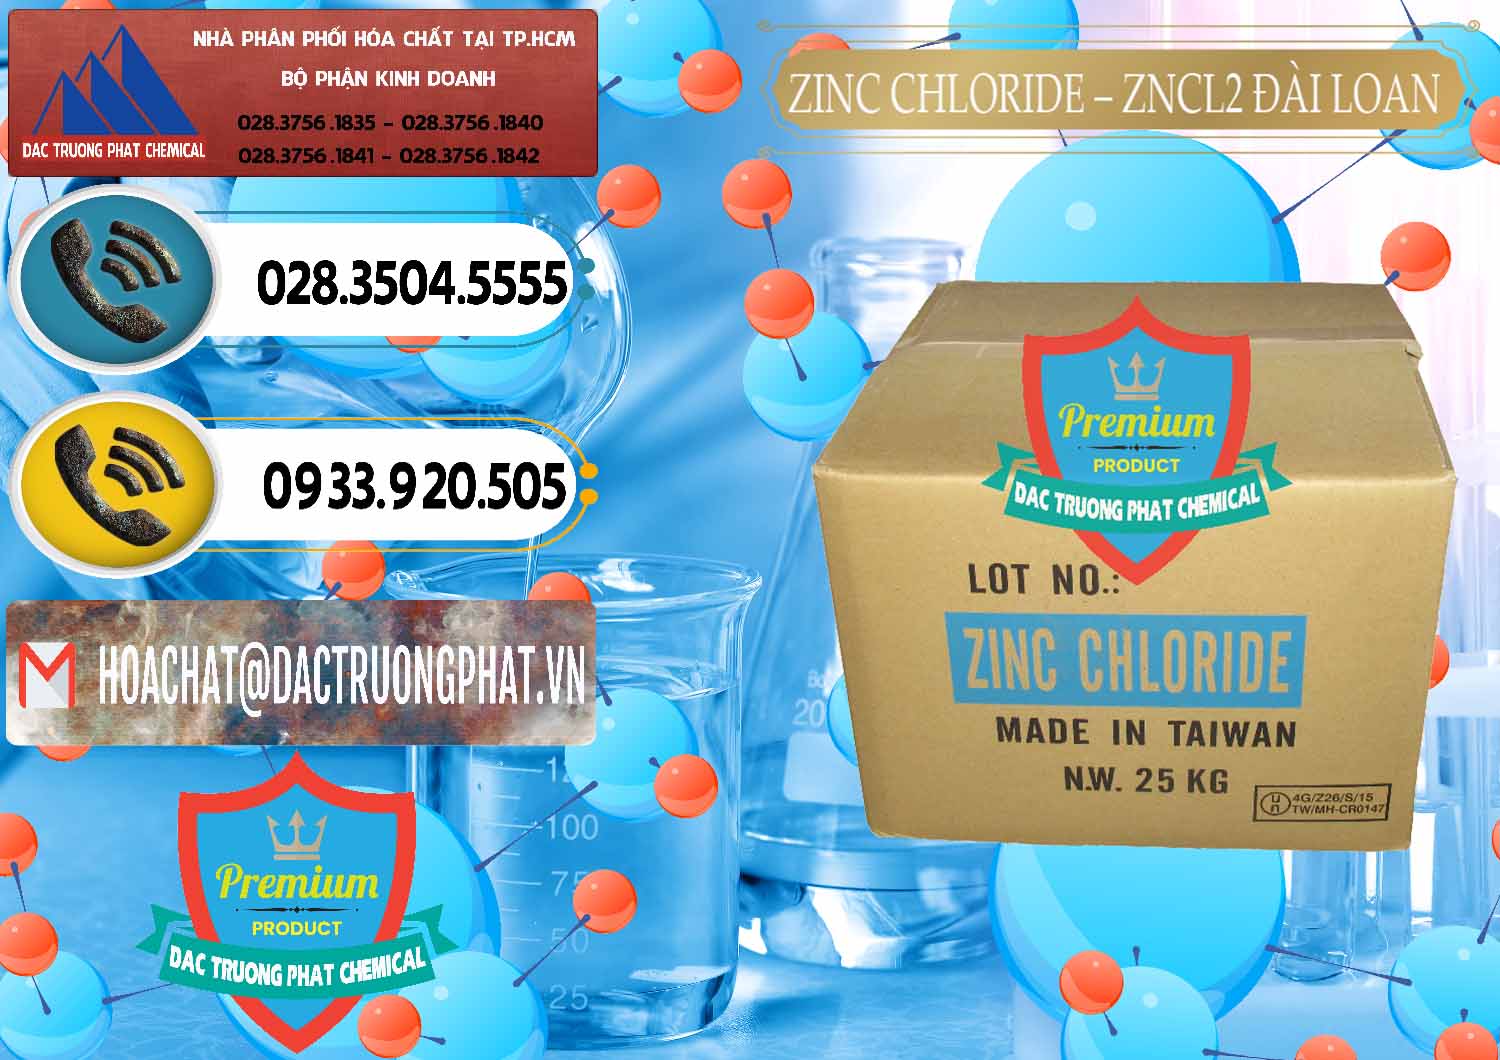 Nơi cung ứng - bán Zinc Chloride - ZNCL2 96% Đài Loan Taiwan - 0178 - Cty chuyên phân phối ( cung ứng ) hóa chất tại TP.HCM - hoachatdetnhuom.vn